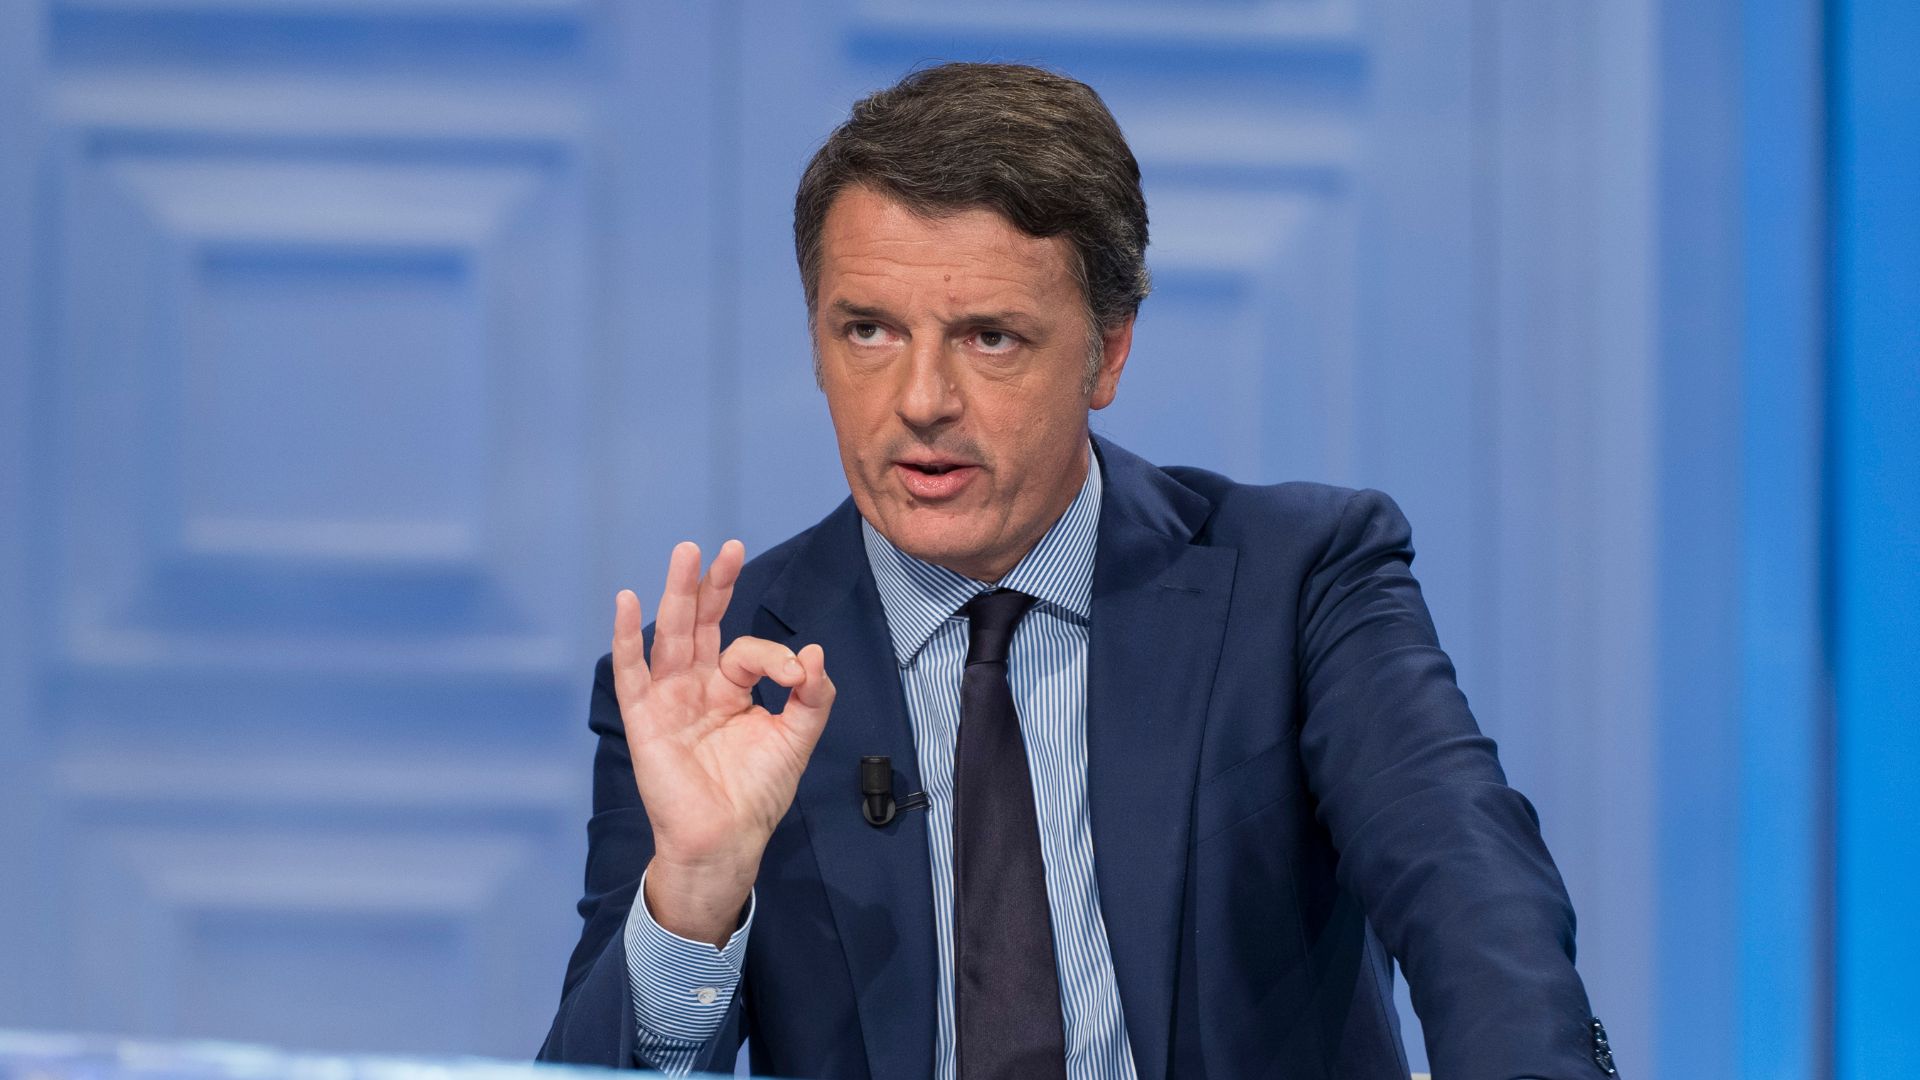 Europee, Renzi fa la morale: “L’obiettivo non è contarsi ma contare”